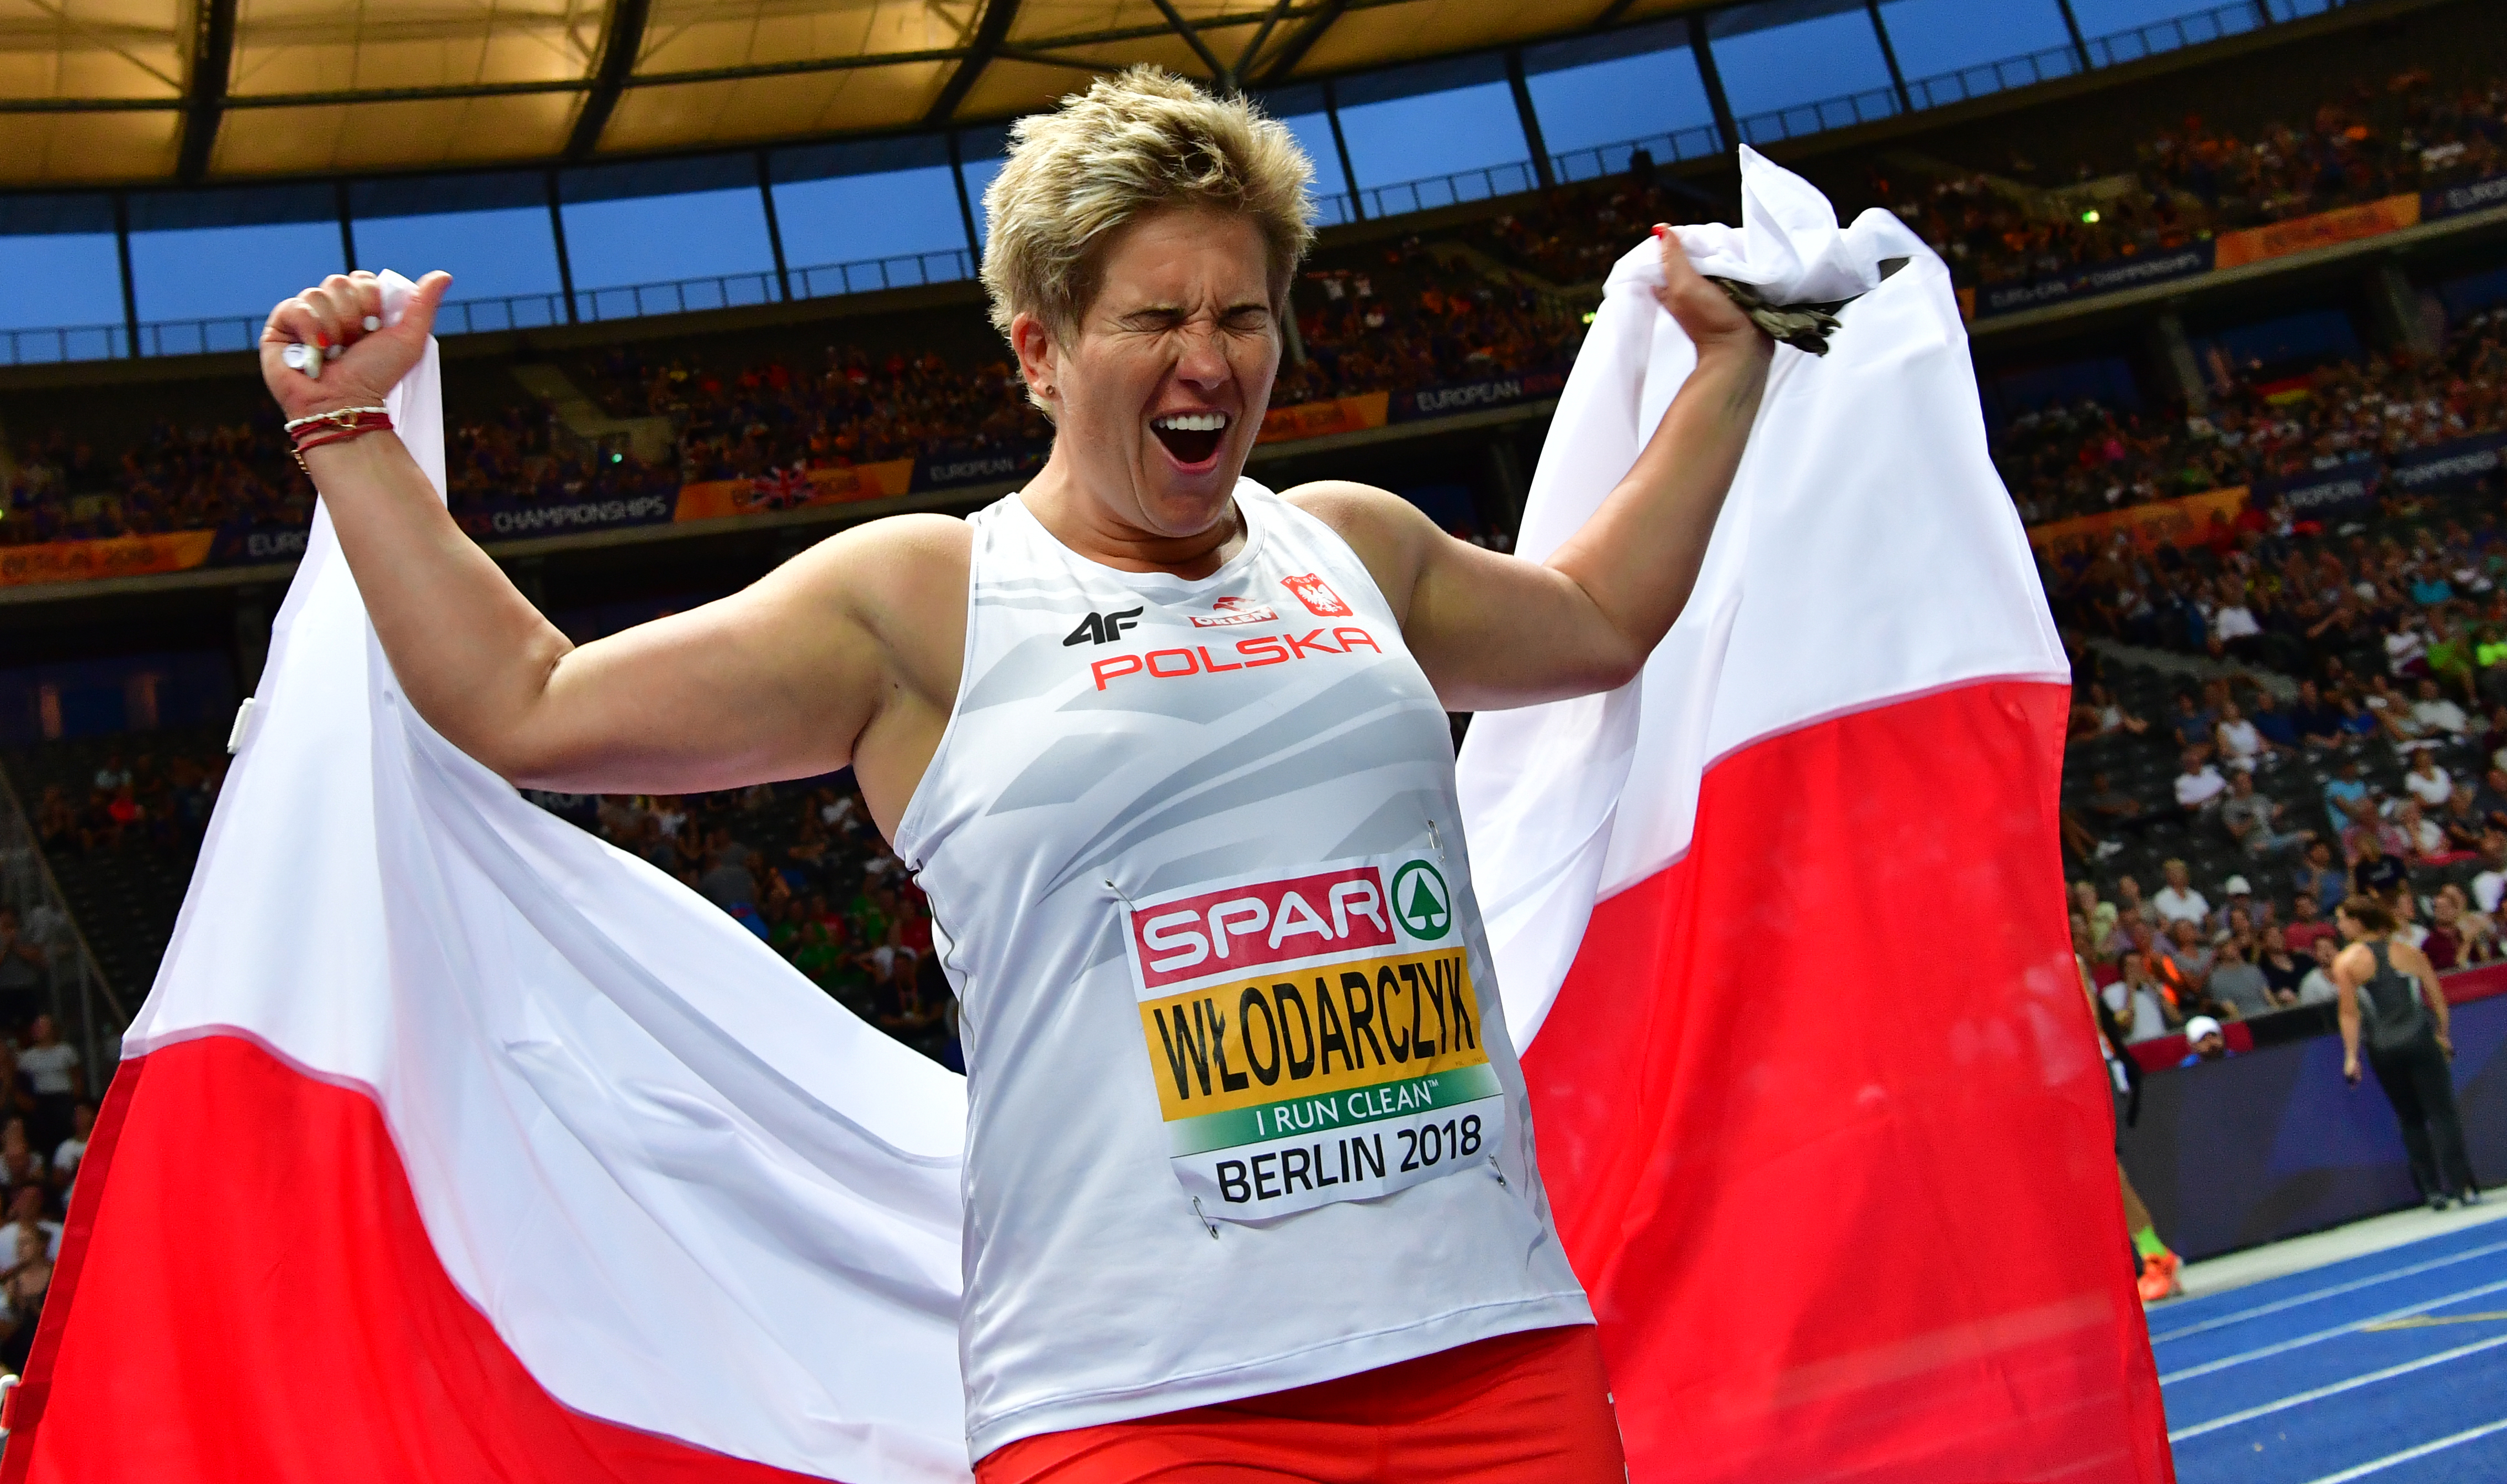 ME w lekkoatletyce Berlin 2018: Anita Włodarczyk ze złotym medalem -  Przegląd Sportowy